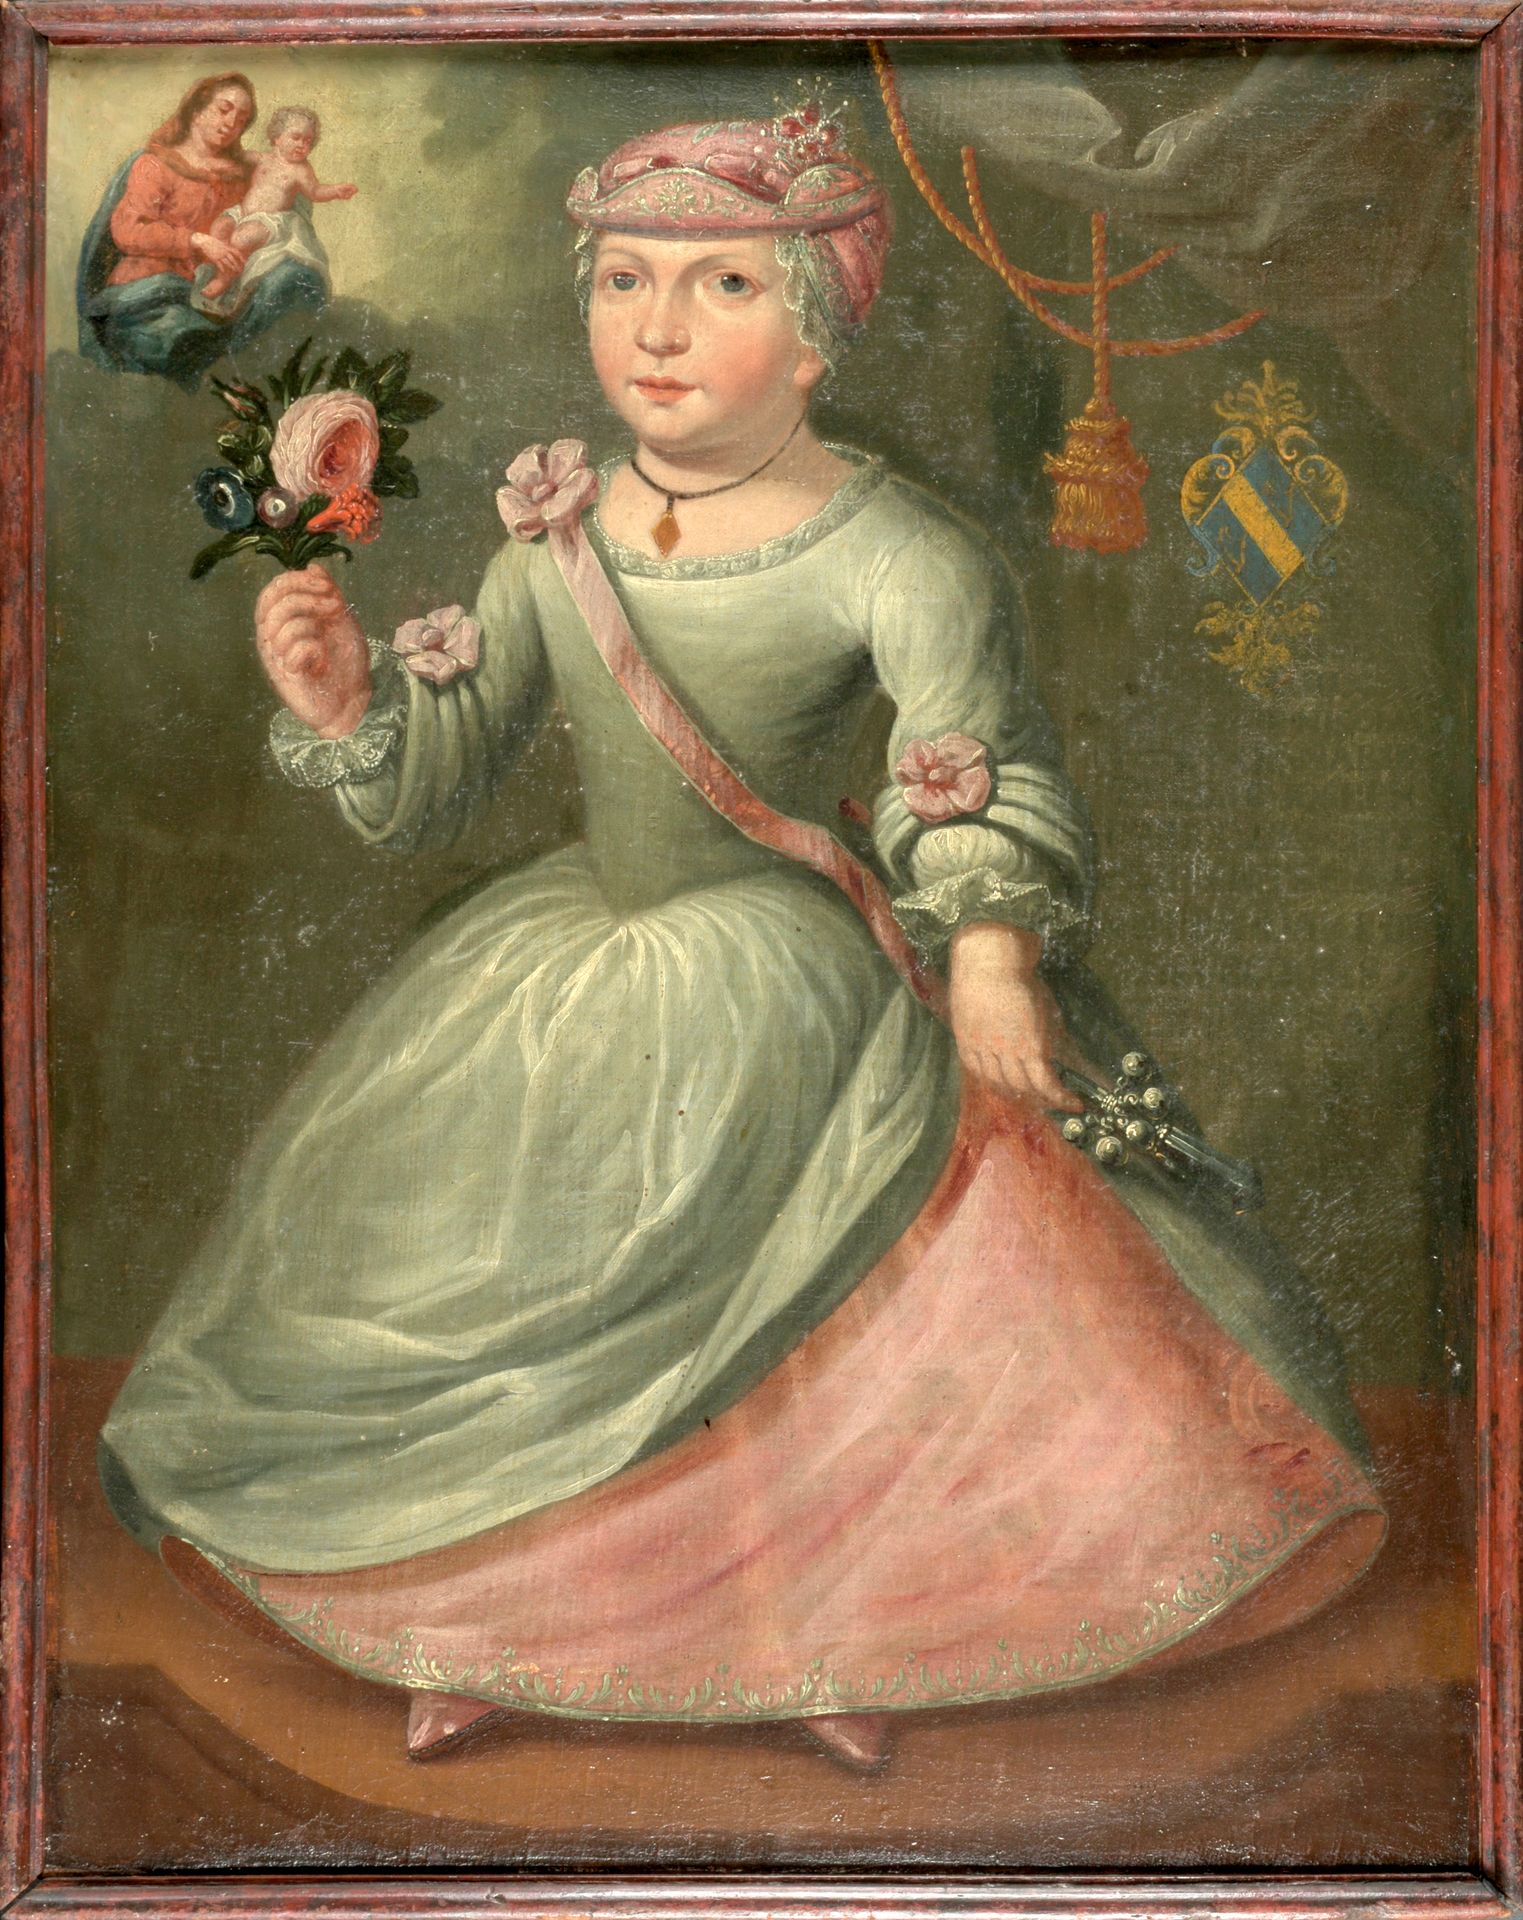 [EX VOTO] 年轻女孩的肖像

布面油画（70 x 53厘米），无名氏，有大卫家族的徽章（？），17/18世纪，旧框架